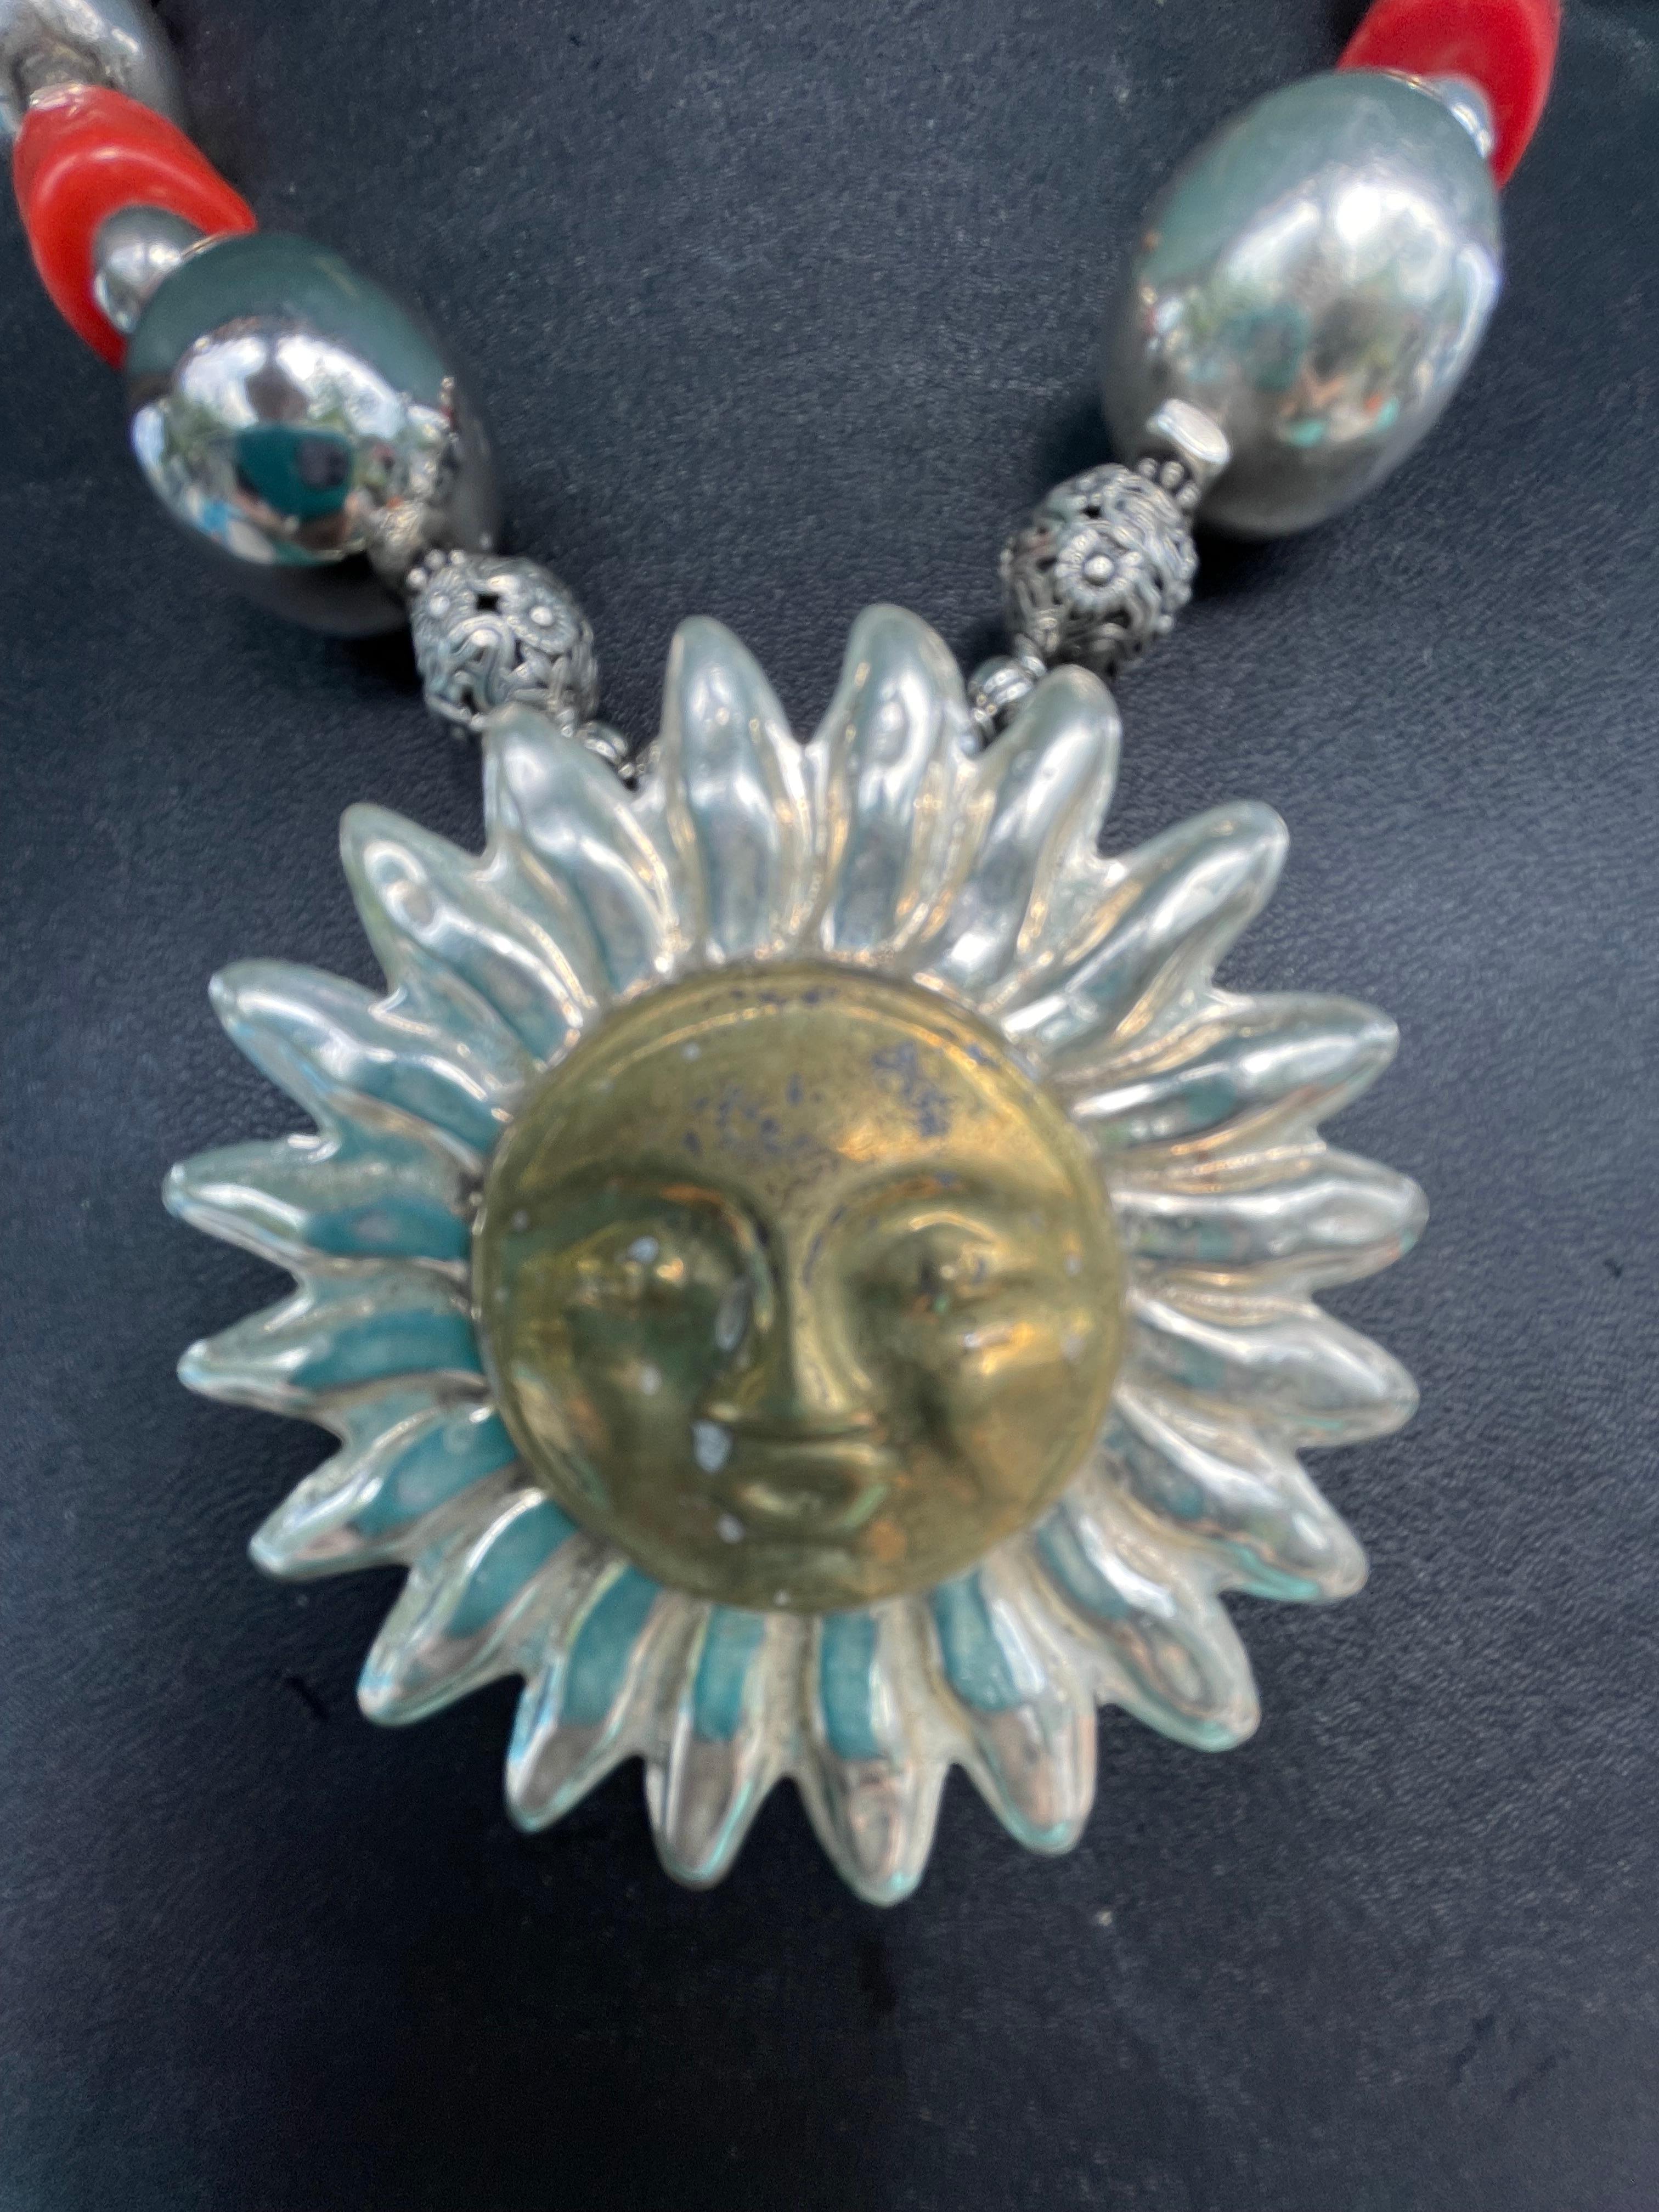 Lorrain's Bijoux bietet eine atemberaubende Halskette mit einem großen mexikanischen Sonnenanhänger aus Sterling und Messing in der Mitte. Diese erstaunliche Halskette besteht aus chinesischen Korallen, italienischen Korallen und Vintage